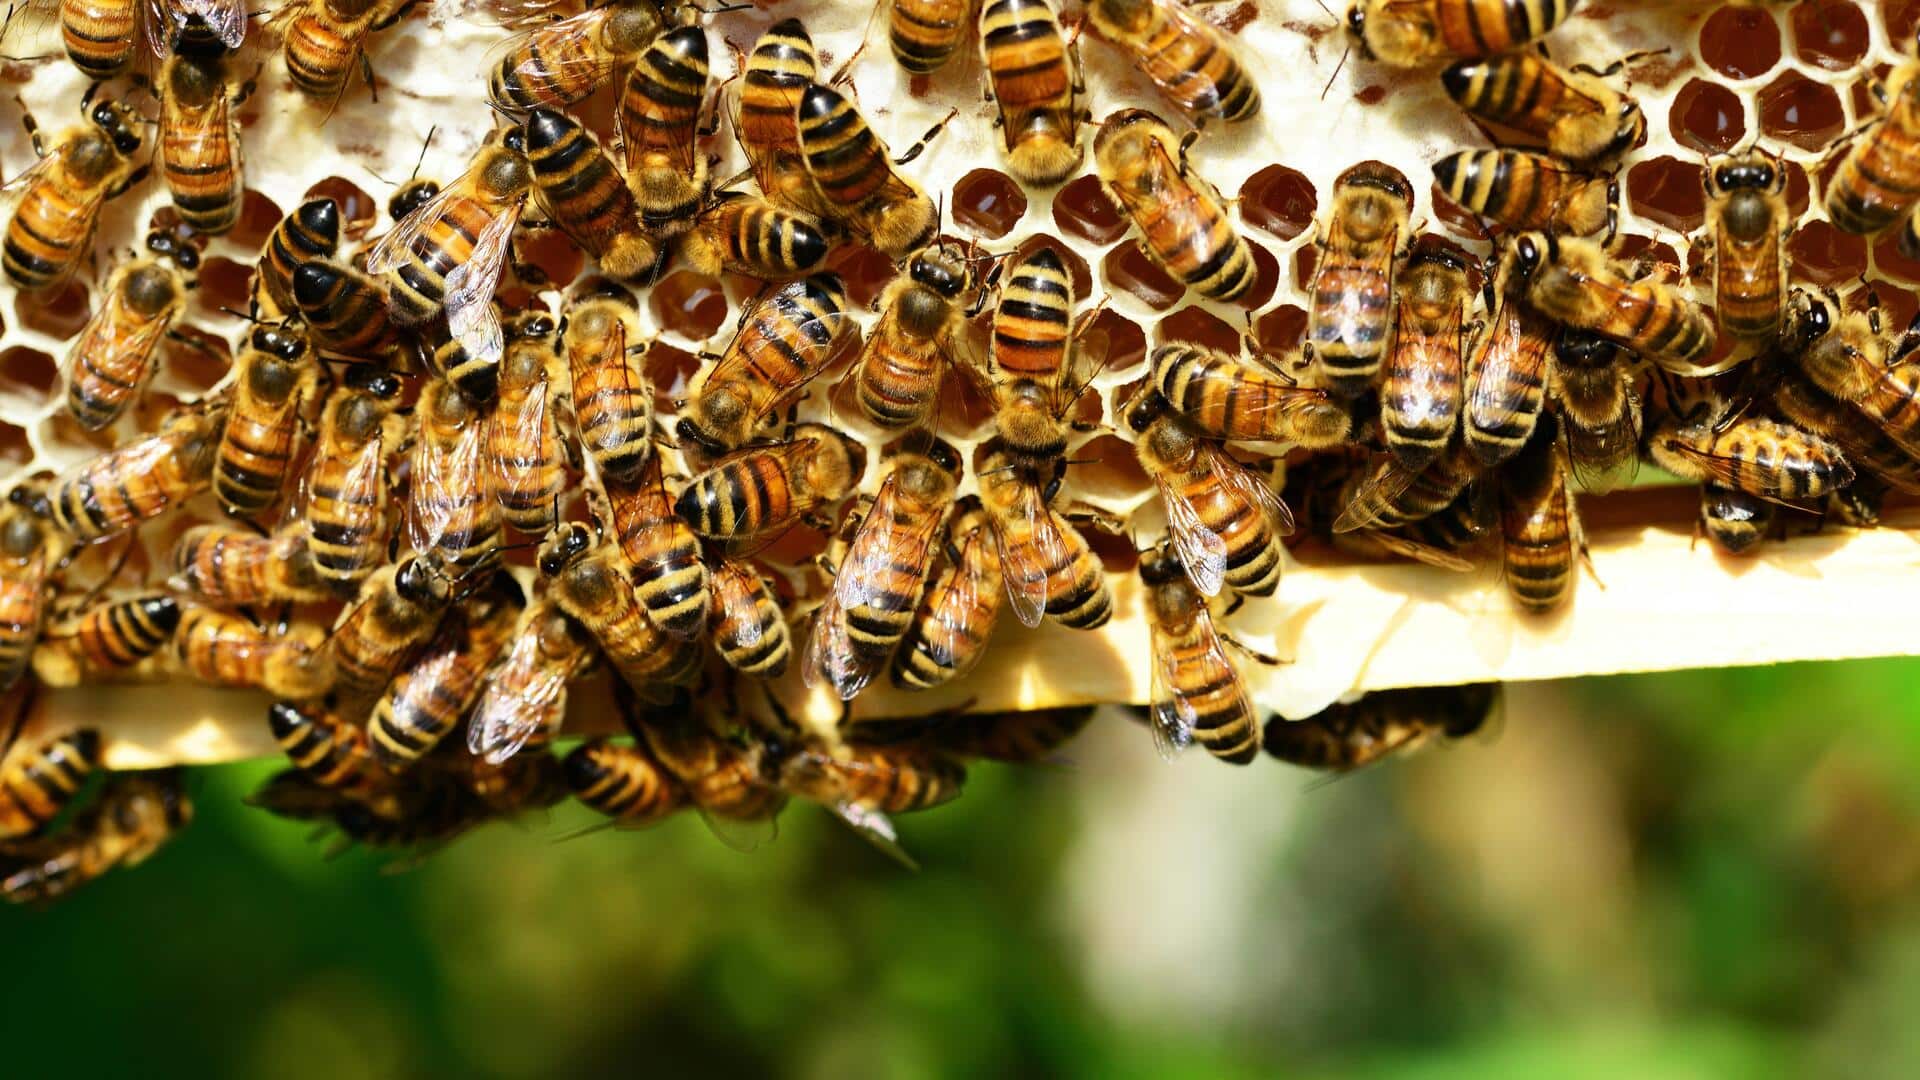 कनाडा: टोरंटो में 50 लाख मधुमक्खियों से भरा बक्सा ट्रक से गिरा, पुलिस की चेतावनी जारी